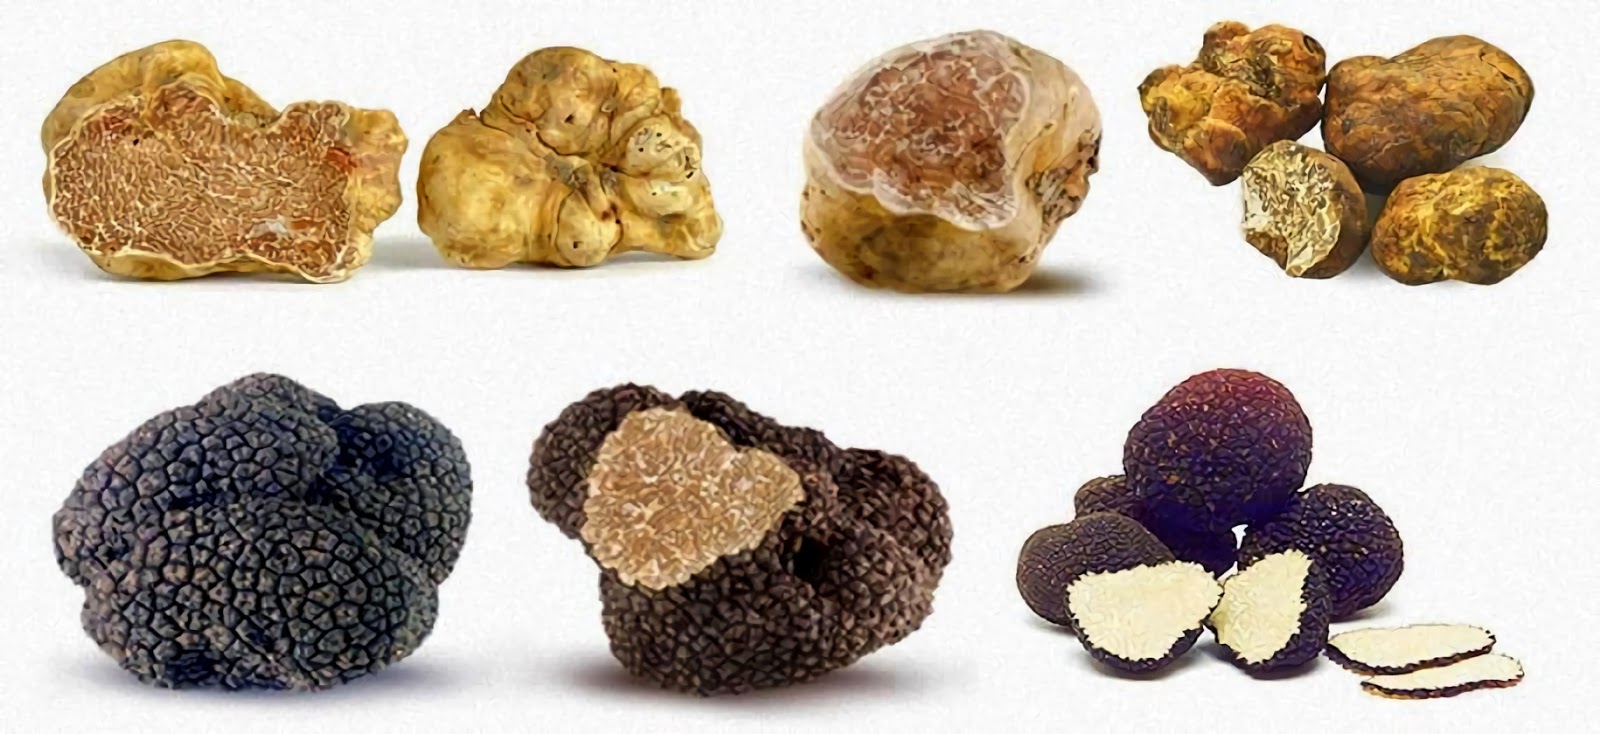 Гриб трюфель: виды, описание, характеристика, фото. как выглядят грибы трюфели, где растут, как их ищут? гриб трюфель: польза и вред